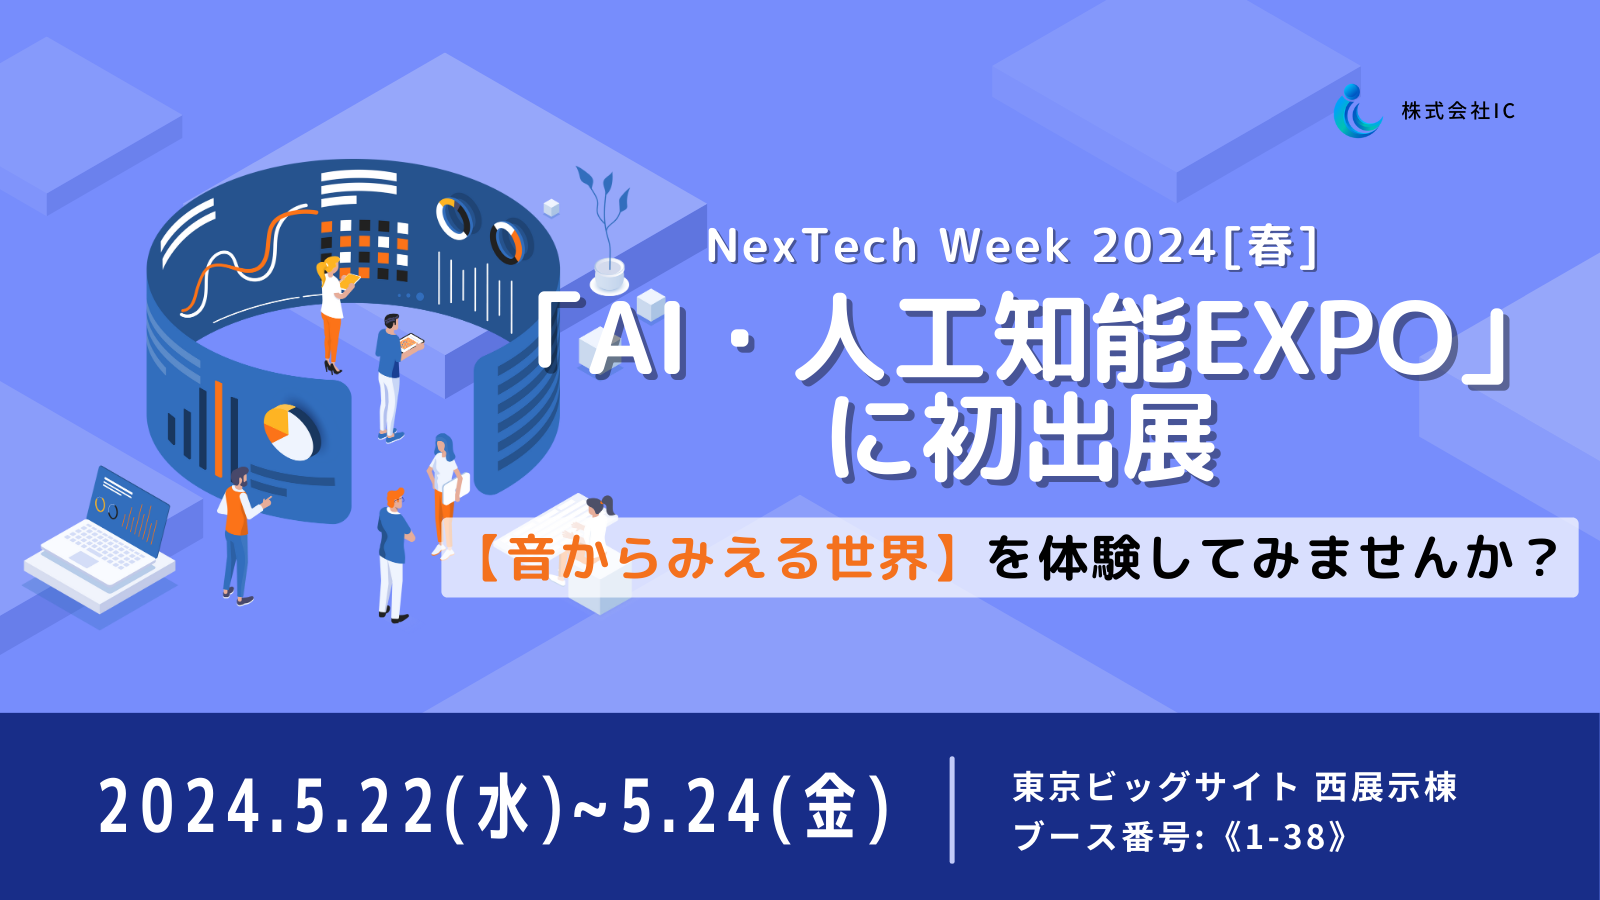 NexTech Week 2024[春] 初出展-1